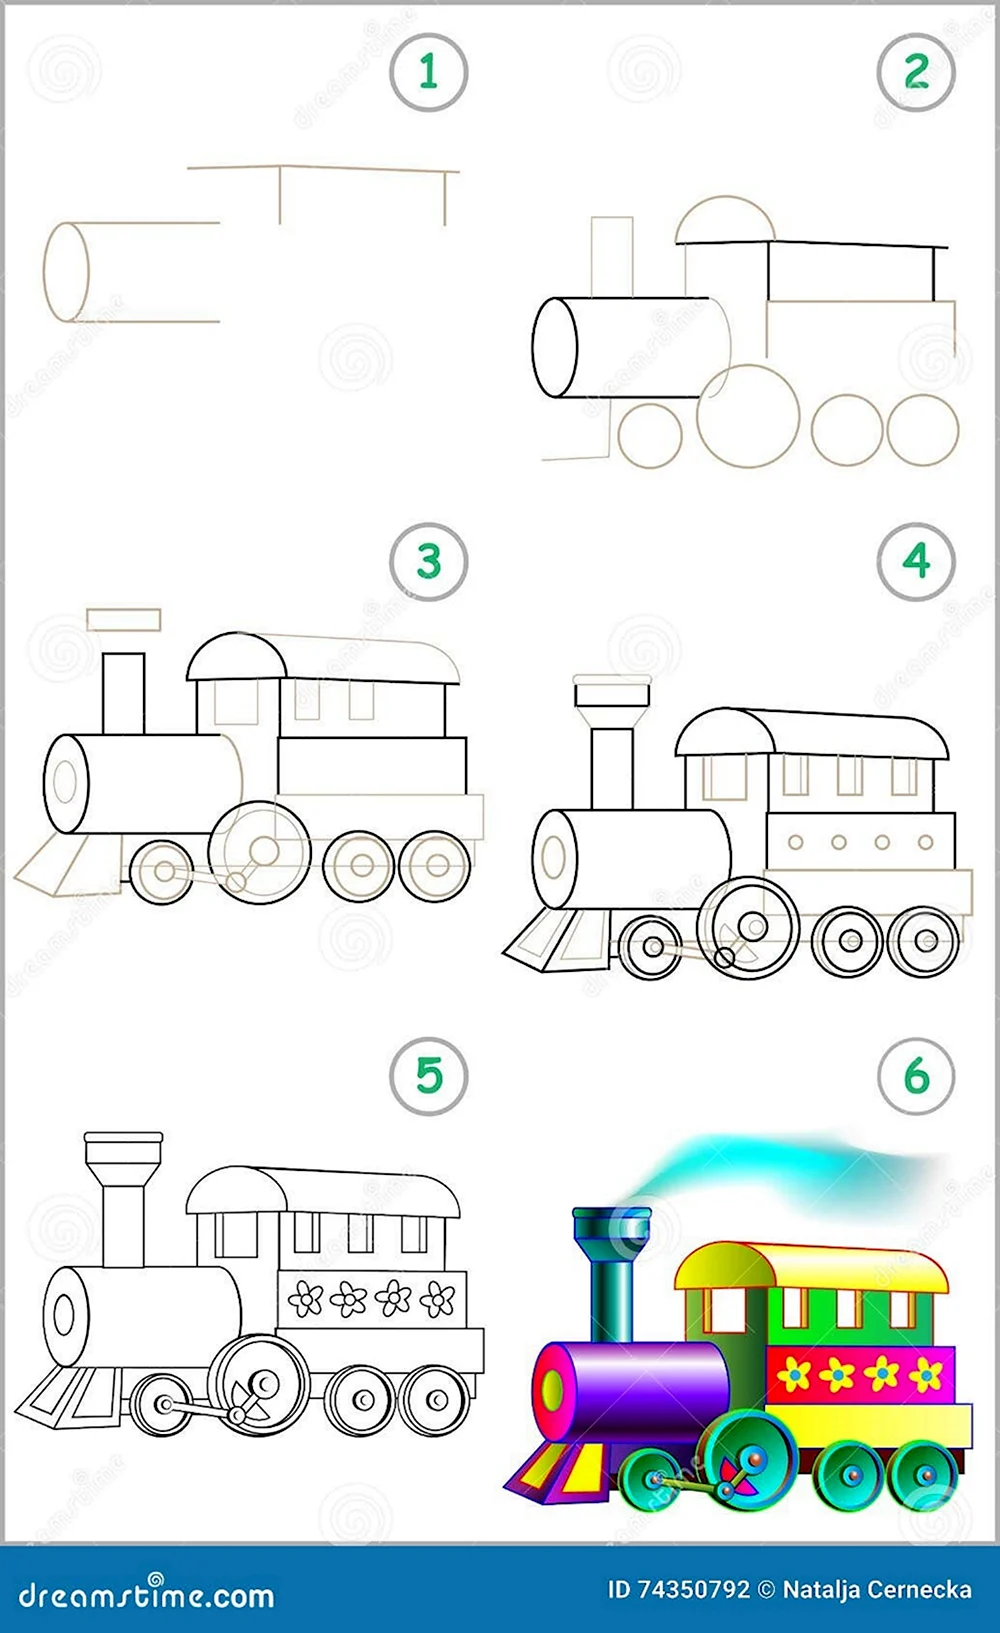 Поэтапное рисование паровоза для детей